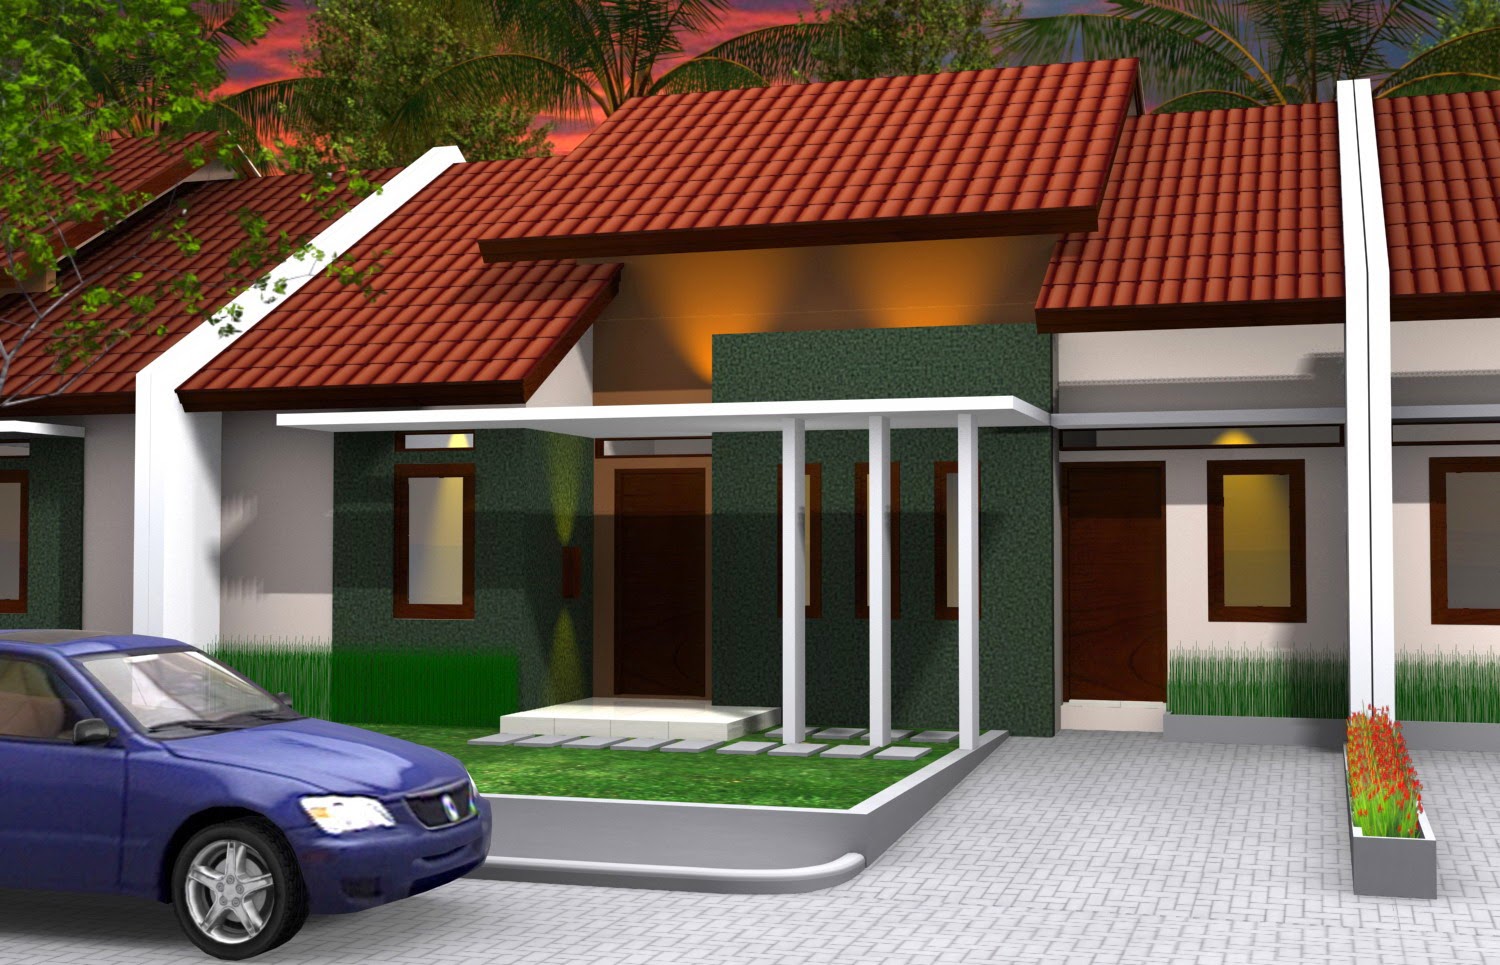 Desain Rumah Minimalis Type 70 1 Lantai Terbaru 2015 Pagar Rumah